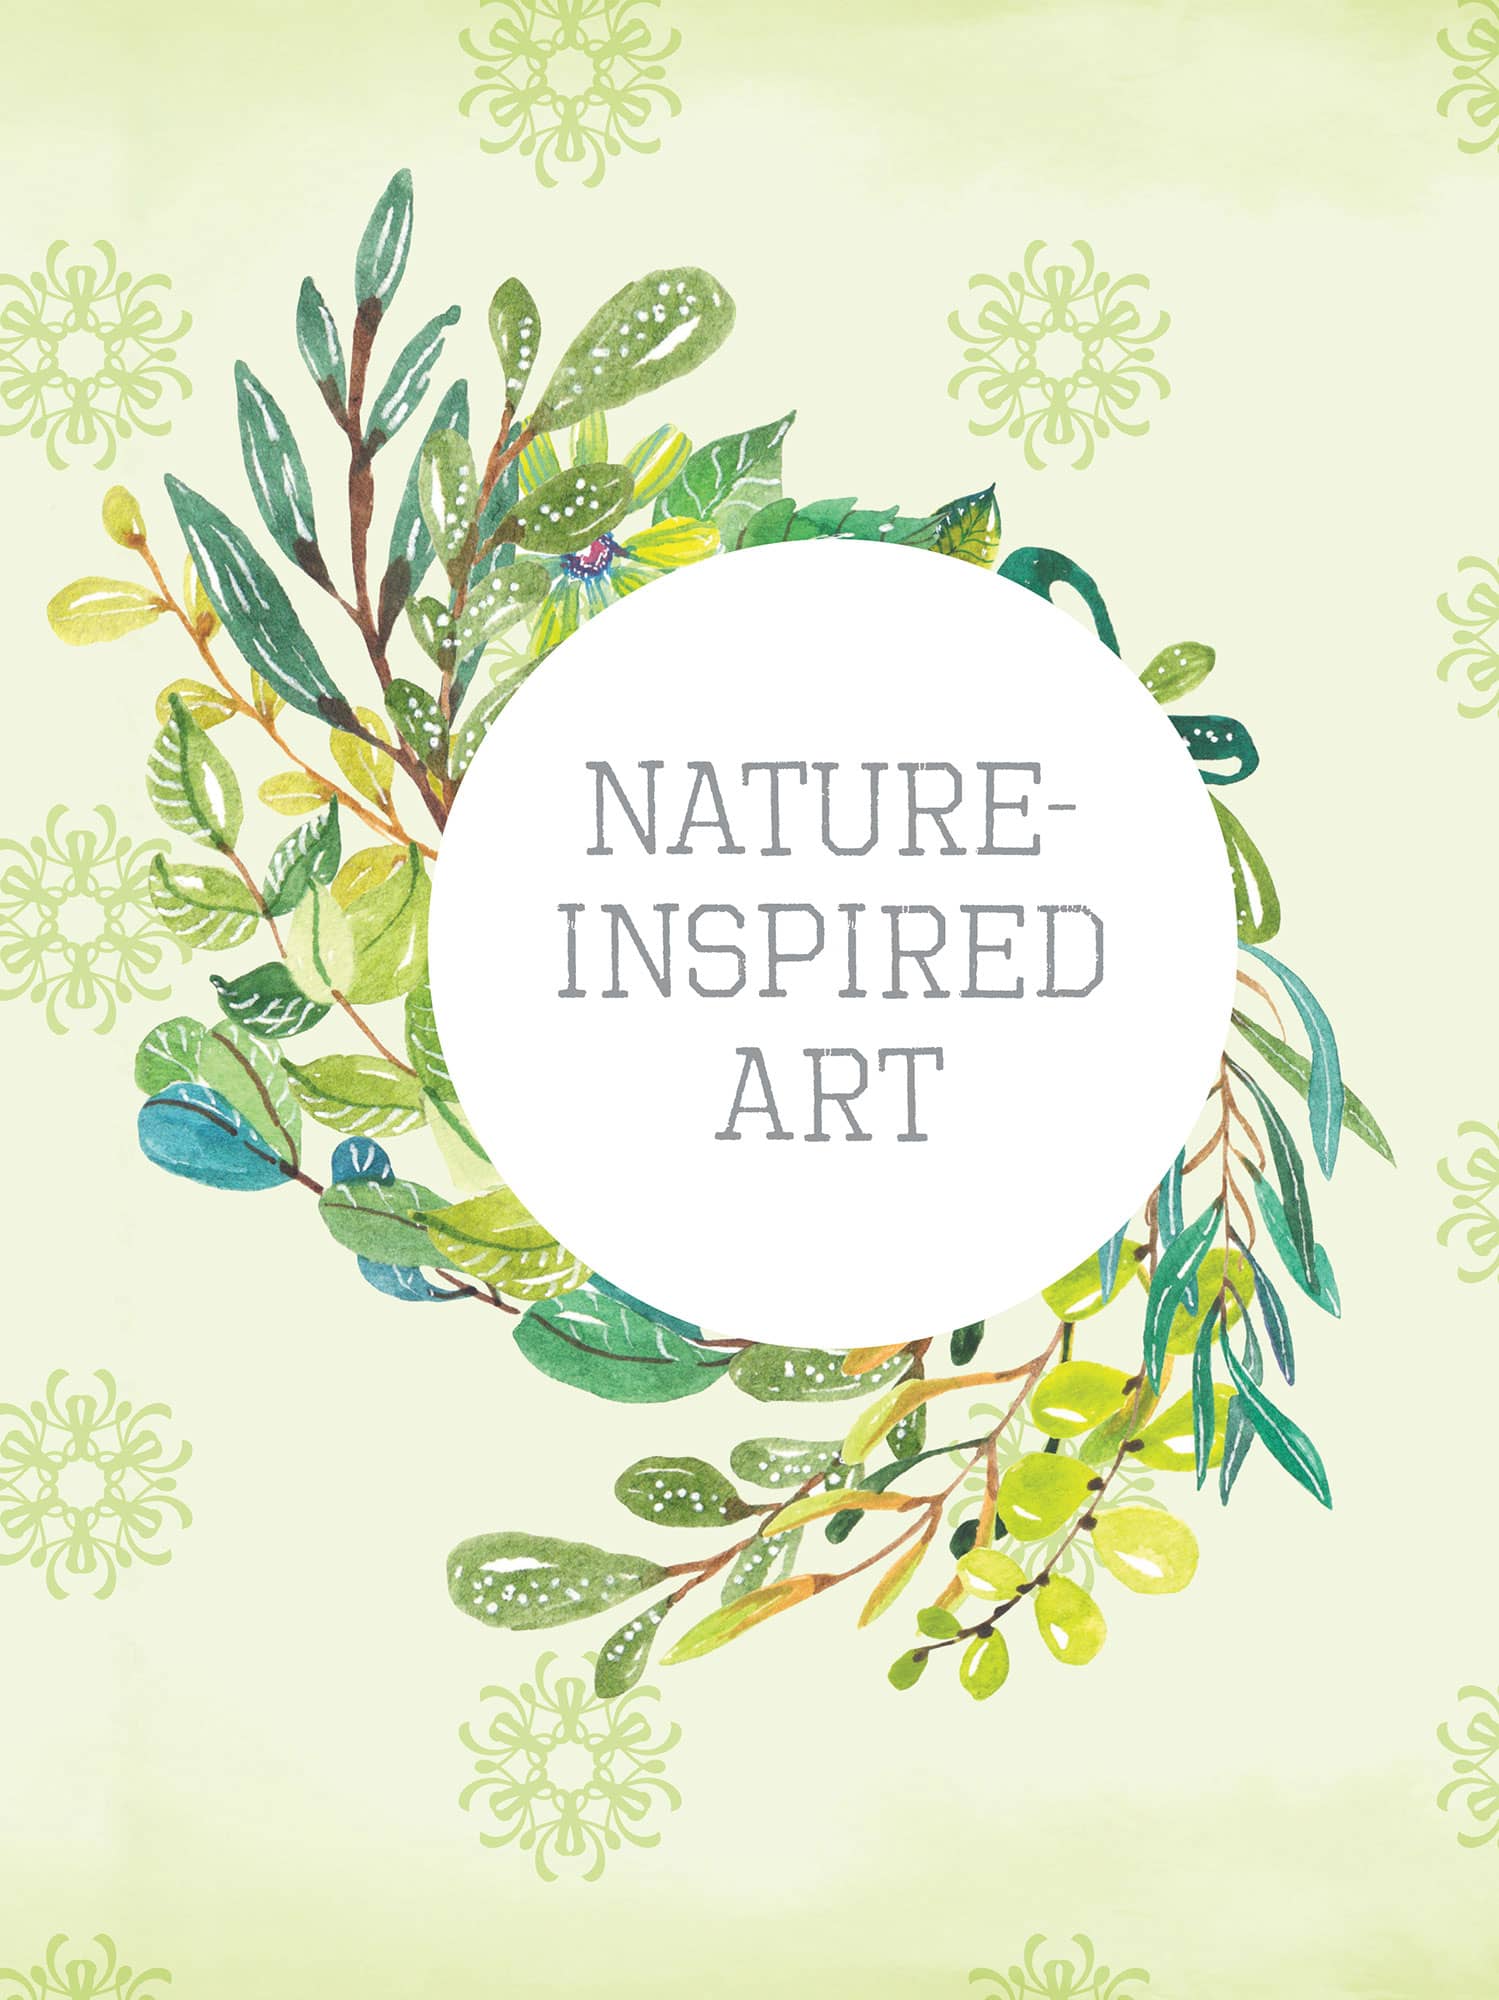 NATURE-INSPIRED ART